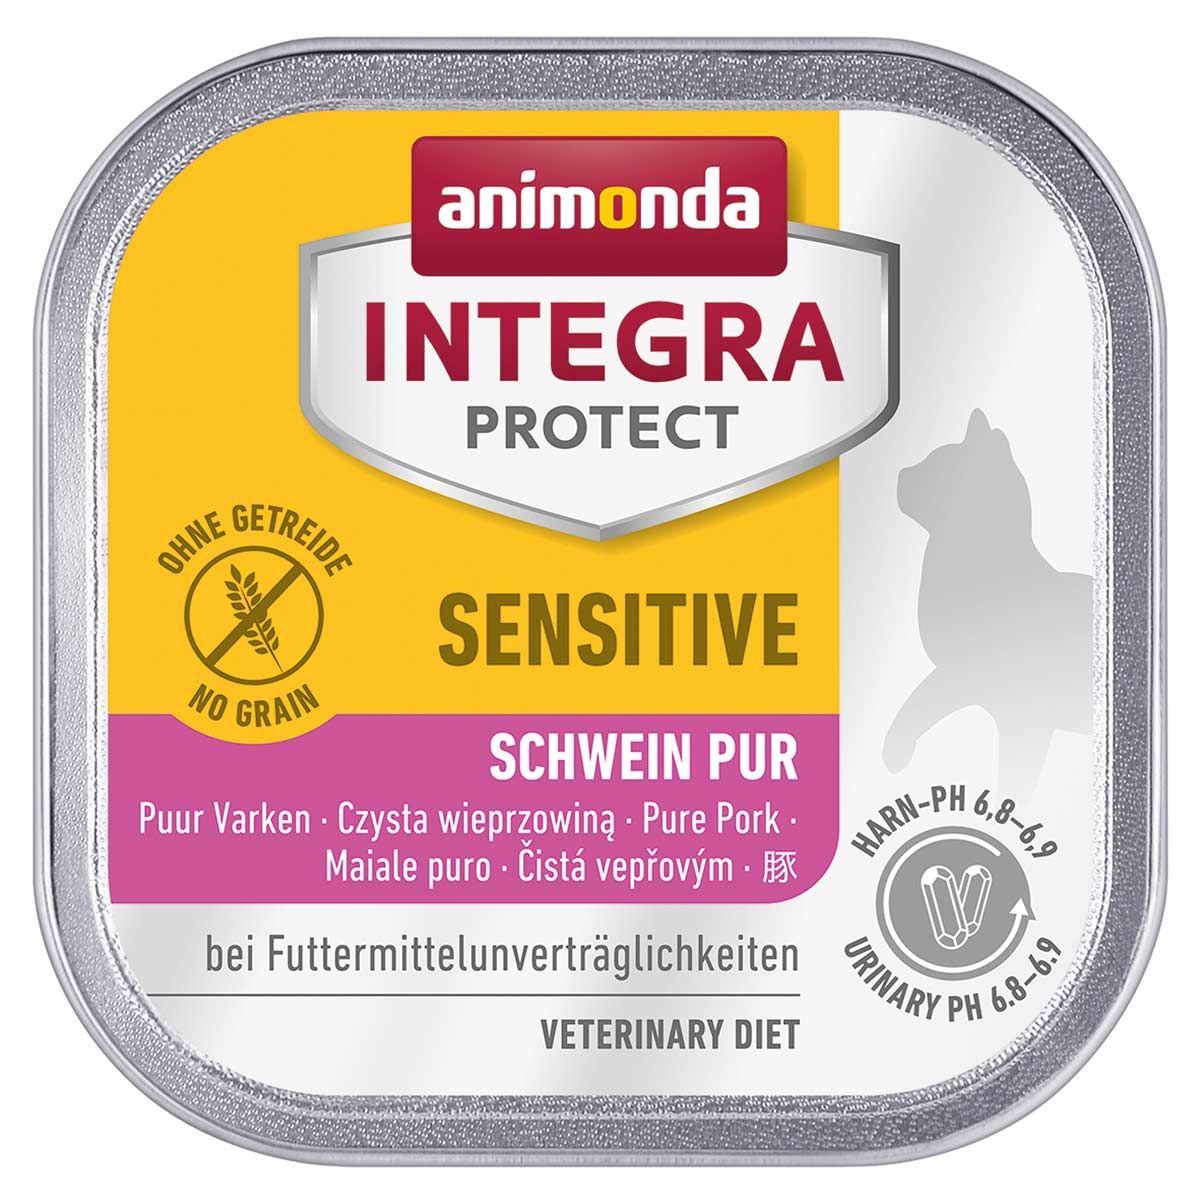 Animonda Integra Protect Sensitive čisté vepřové maso